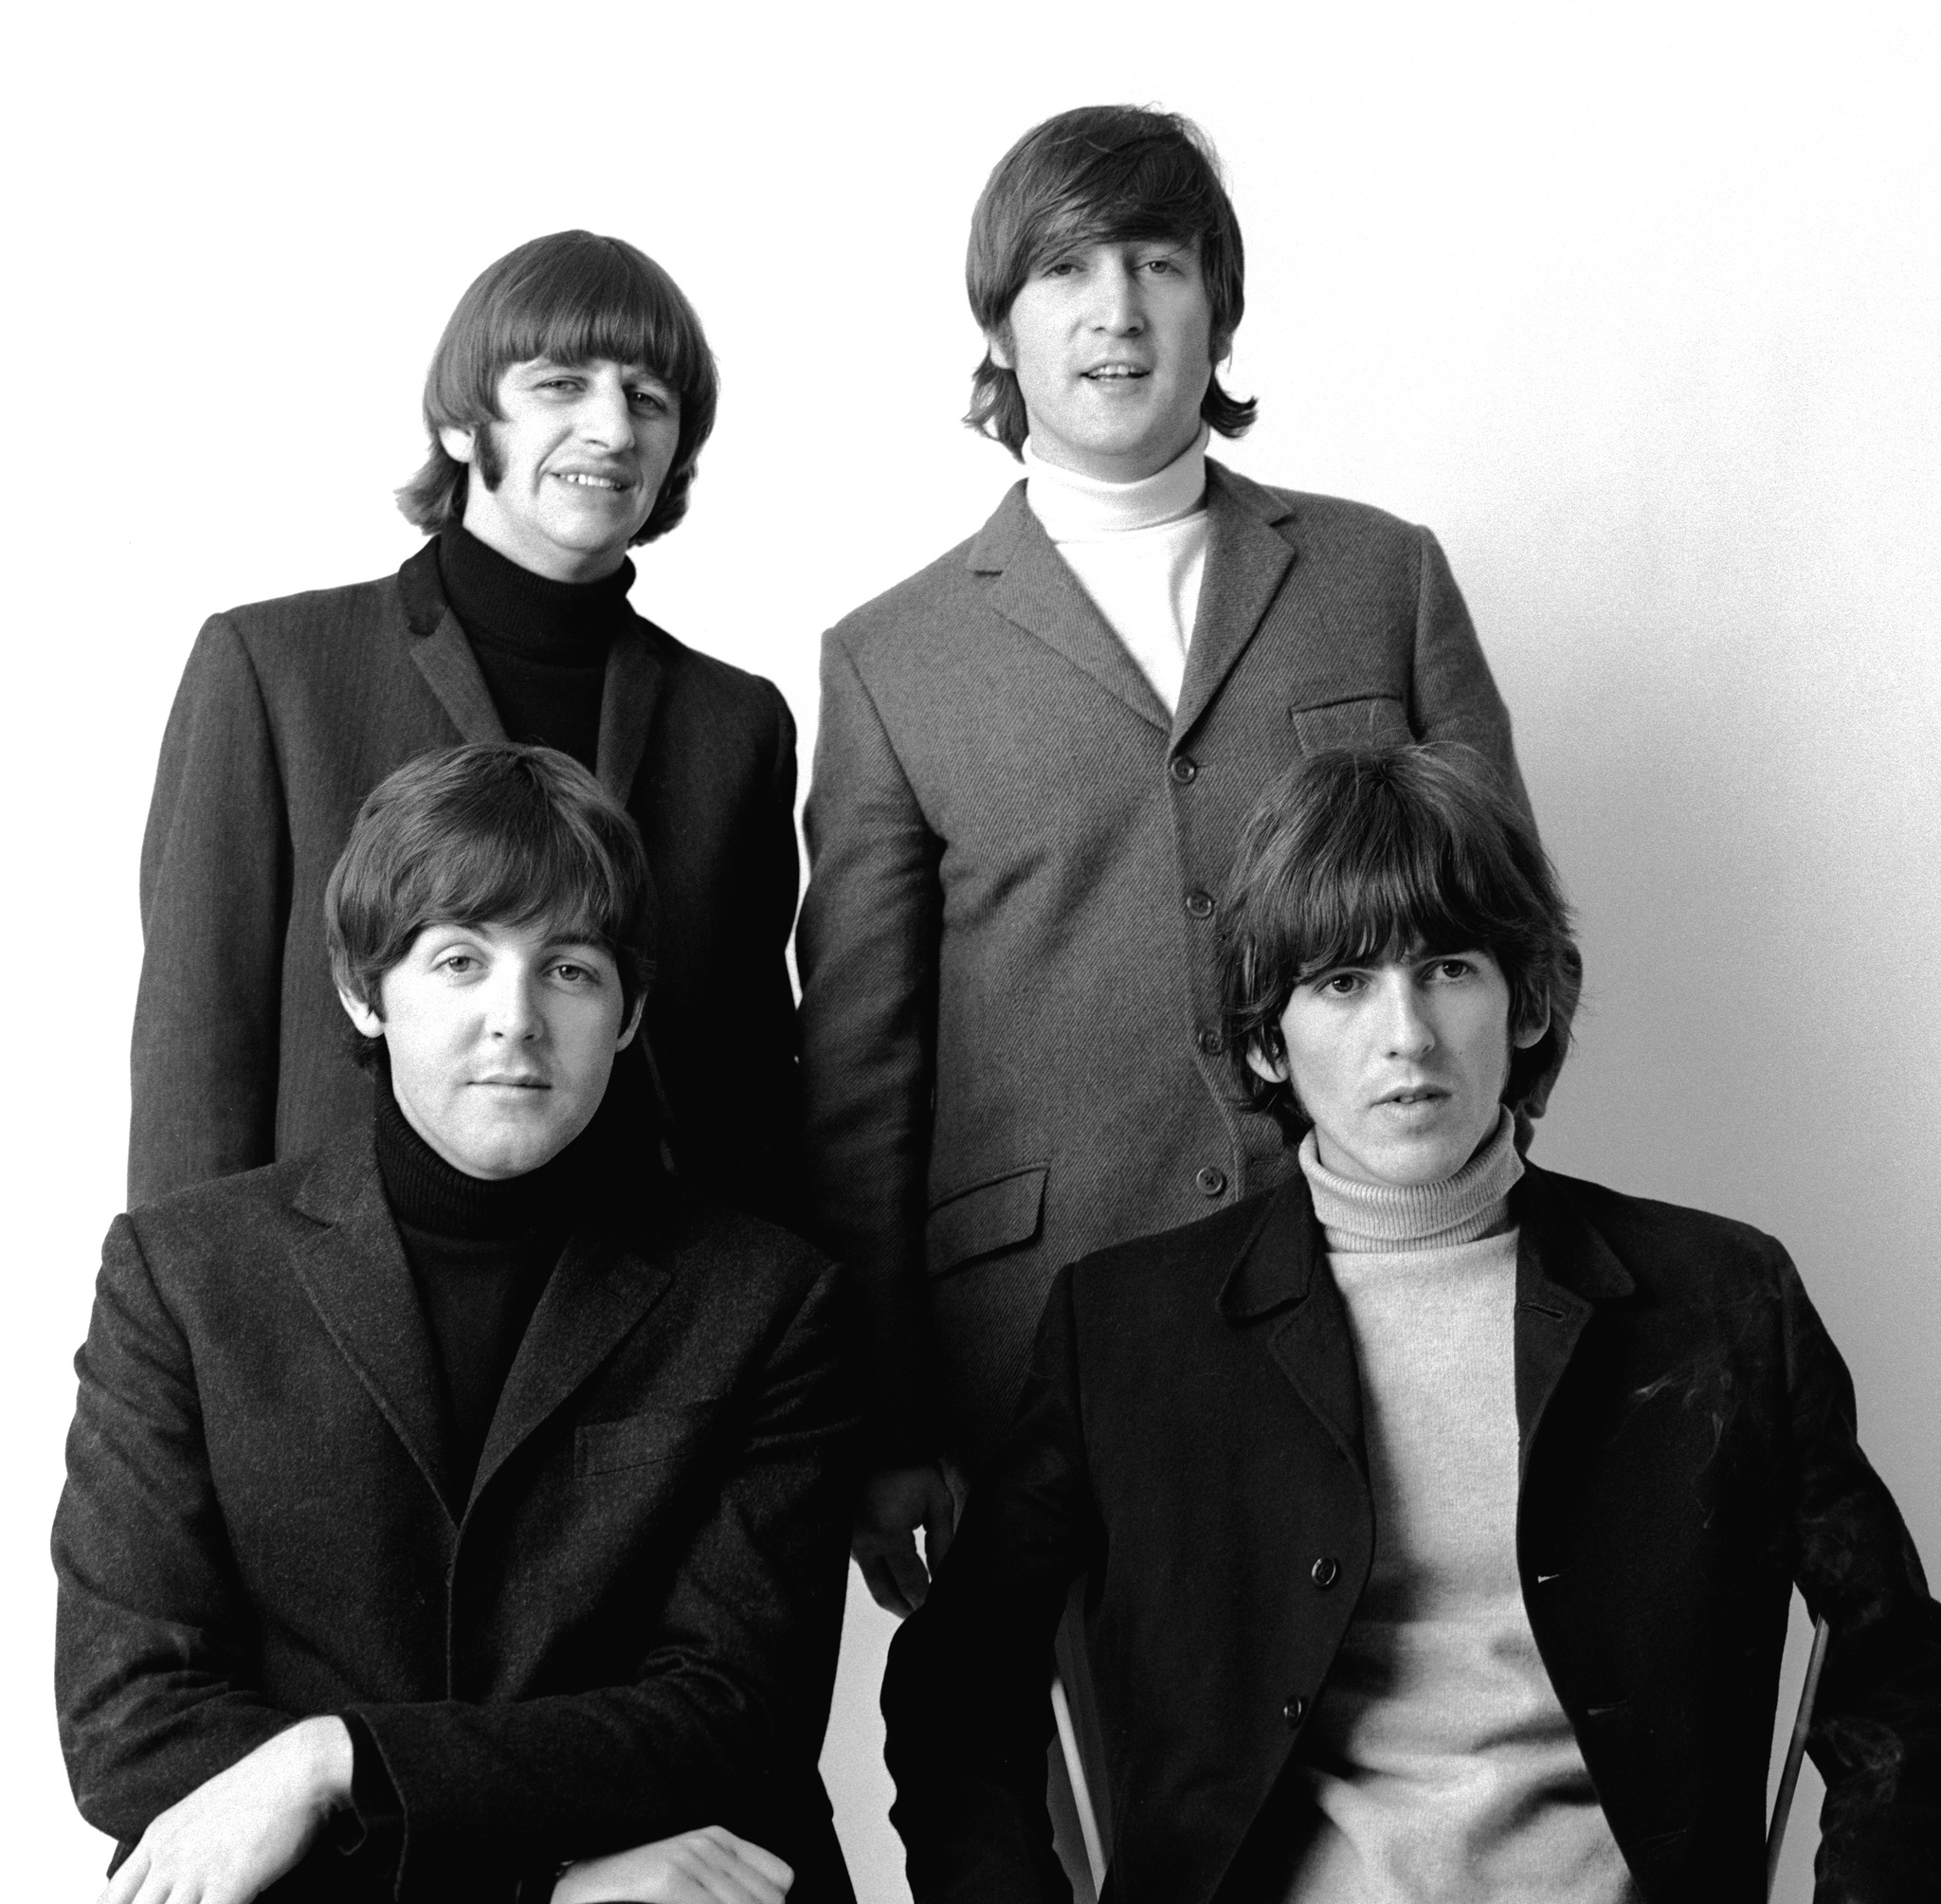 Hace A Os Los Beatles Debutaba Con Love Me Do La Canci N De Los